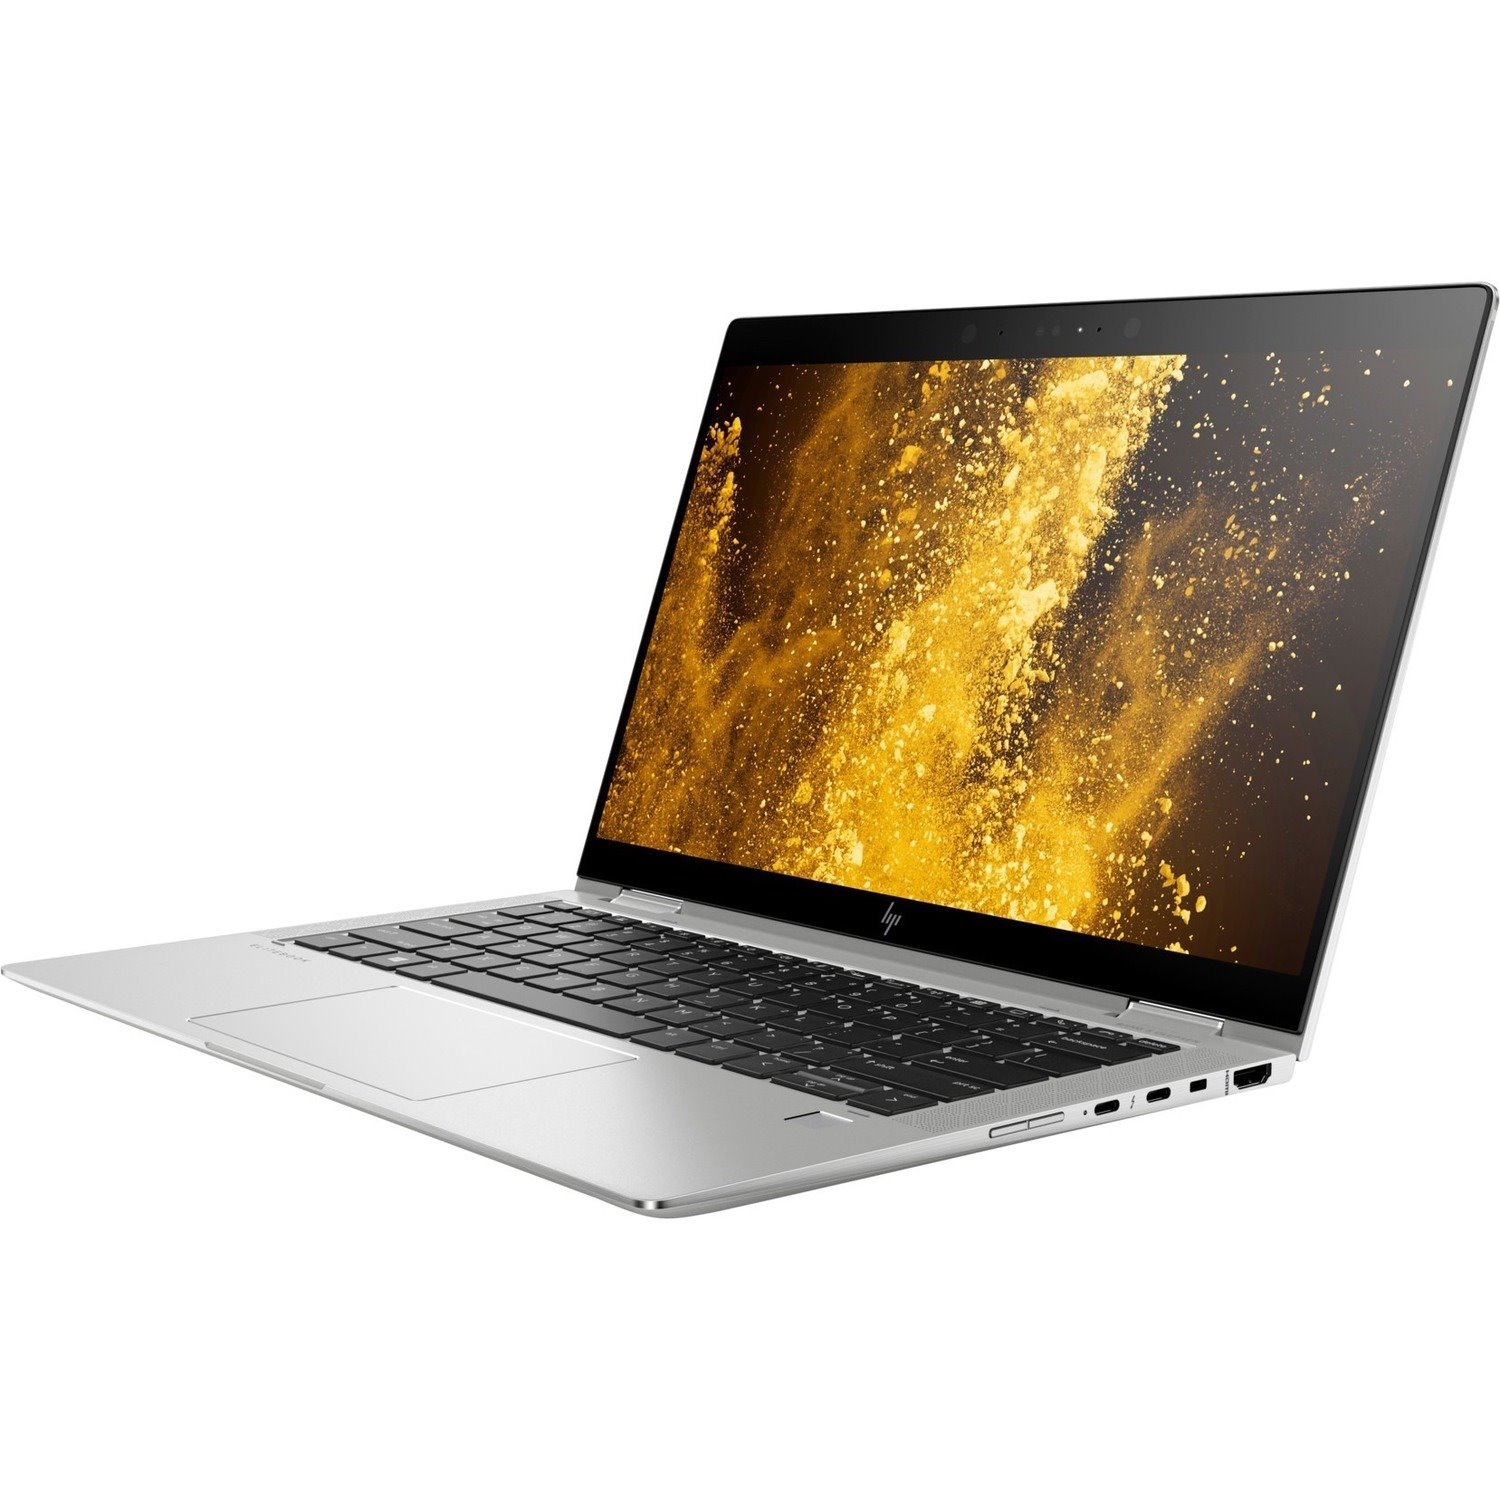 HP EliteBook x360 1030 G3 33.8 cm (13.3") Touchscreen Convertible 2 in 1 Notebook - 1920 x 1080 - Intel Core i7 8th Gen i7-8650U Quad-core (4 Core) 1.90 GHz - 8 GB Total RAM - 256 GB SSD